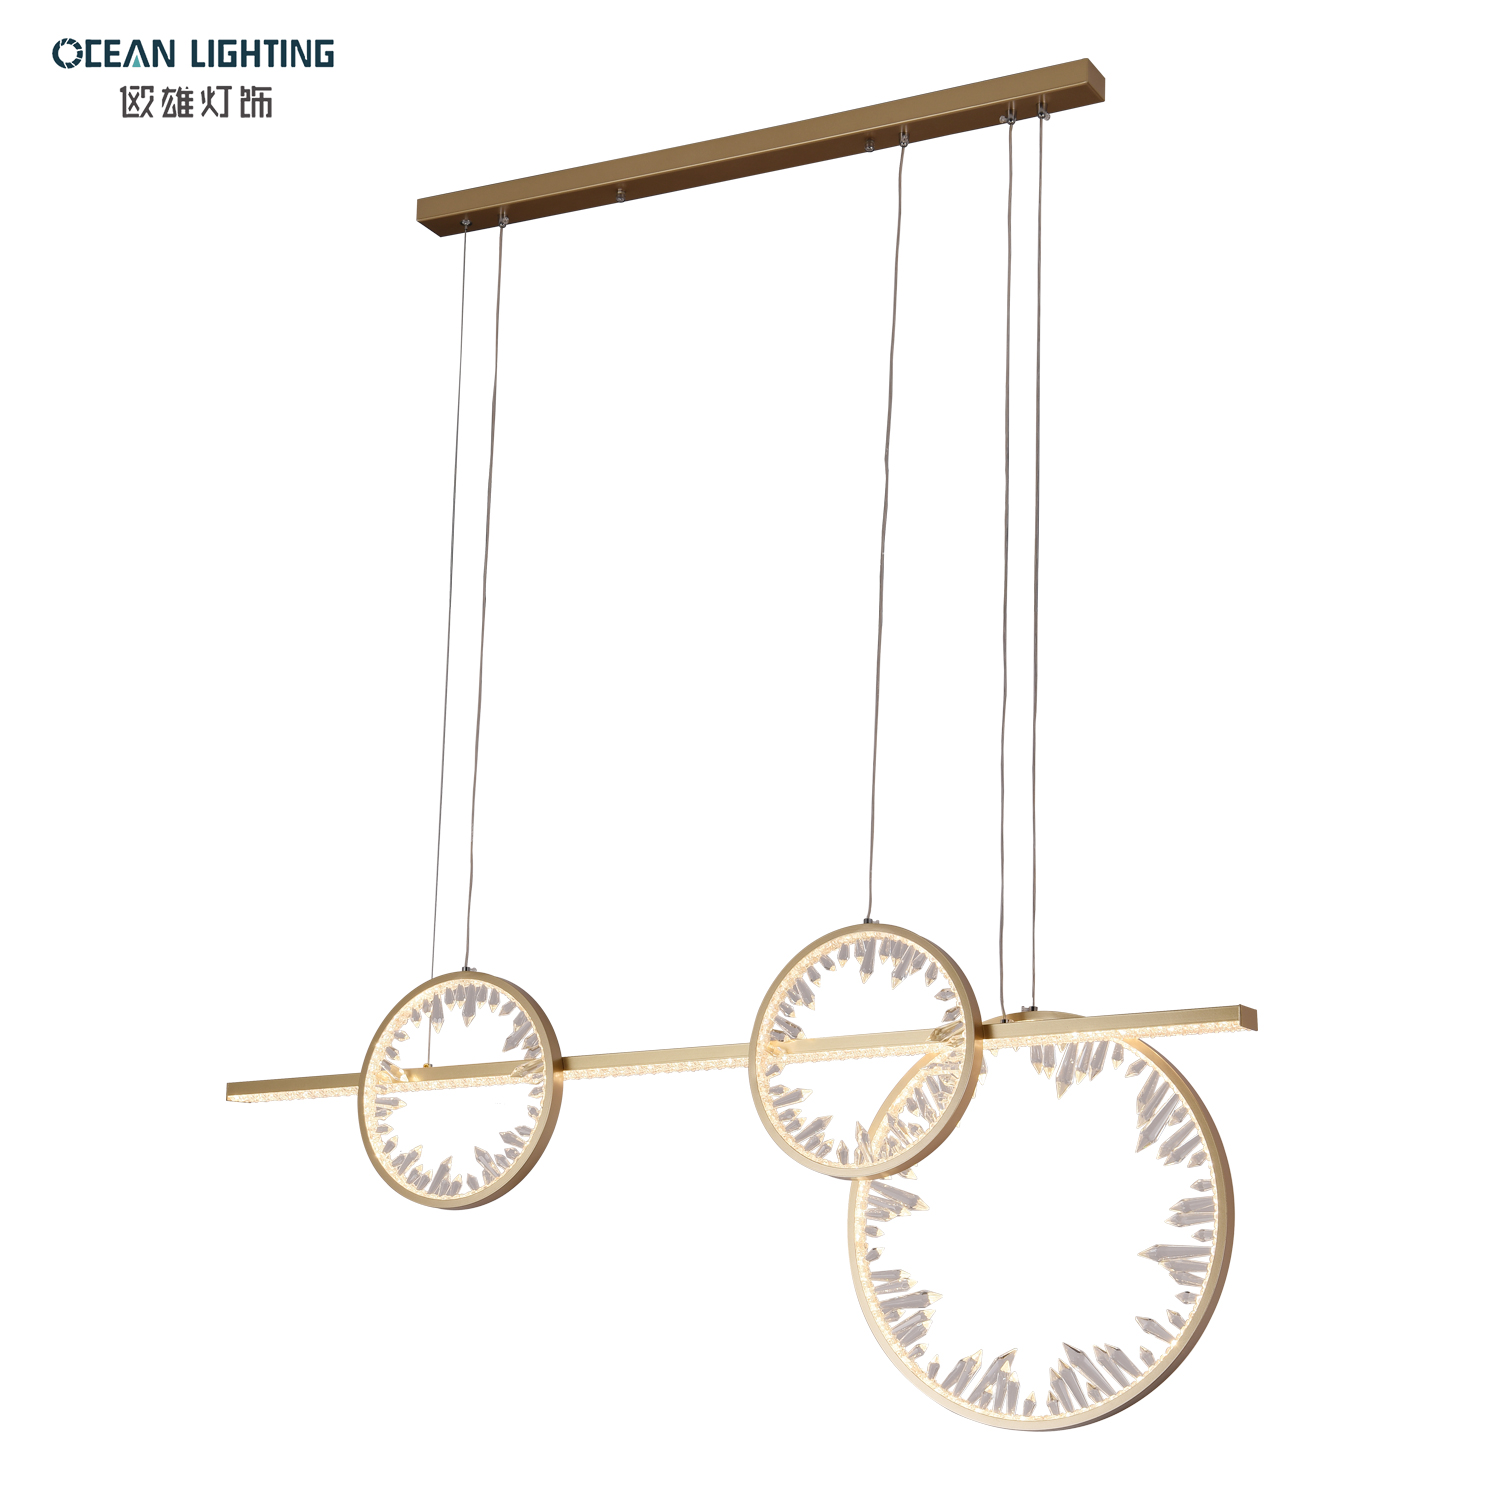 OCEAN LAMP Pendant Light LED Luxury Modern Crystal Round Chandelier for Living Room